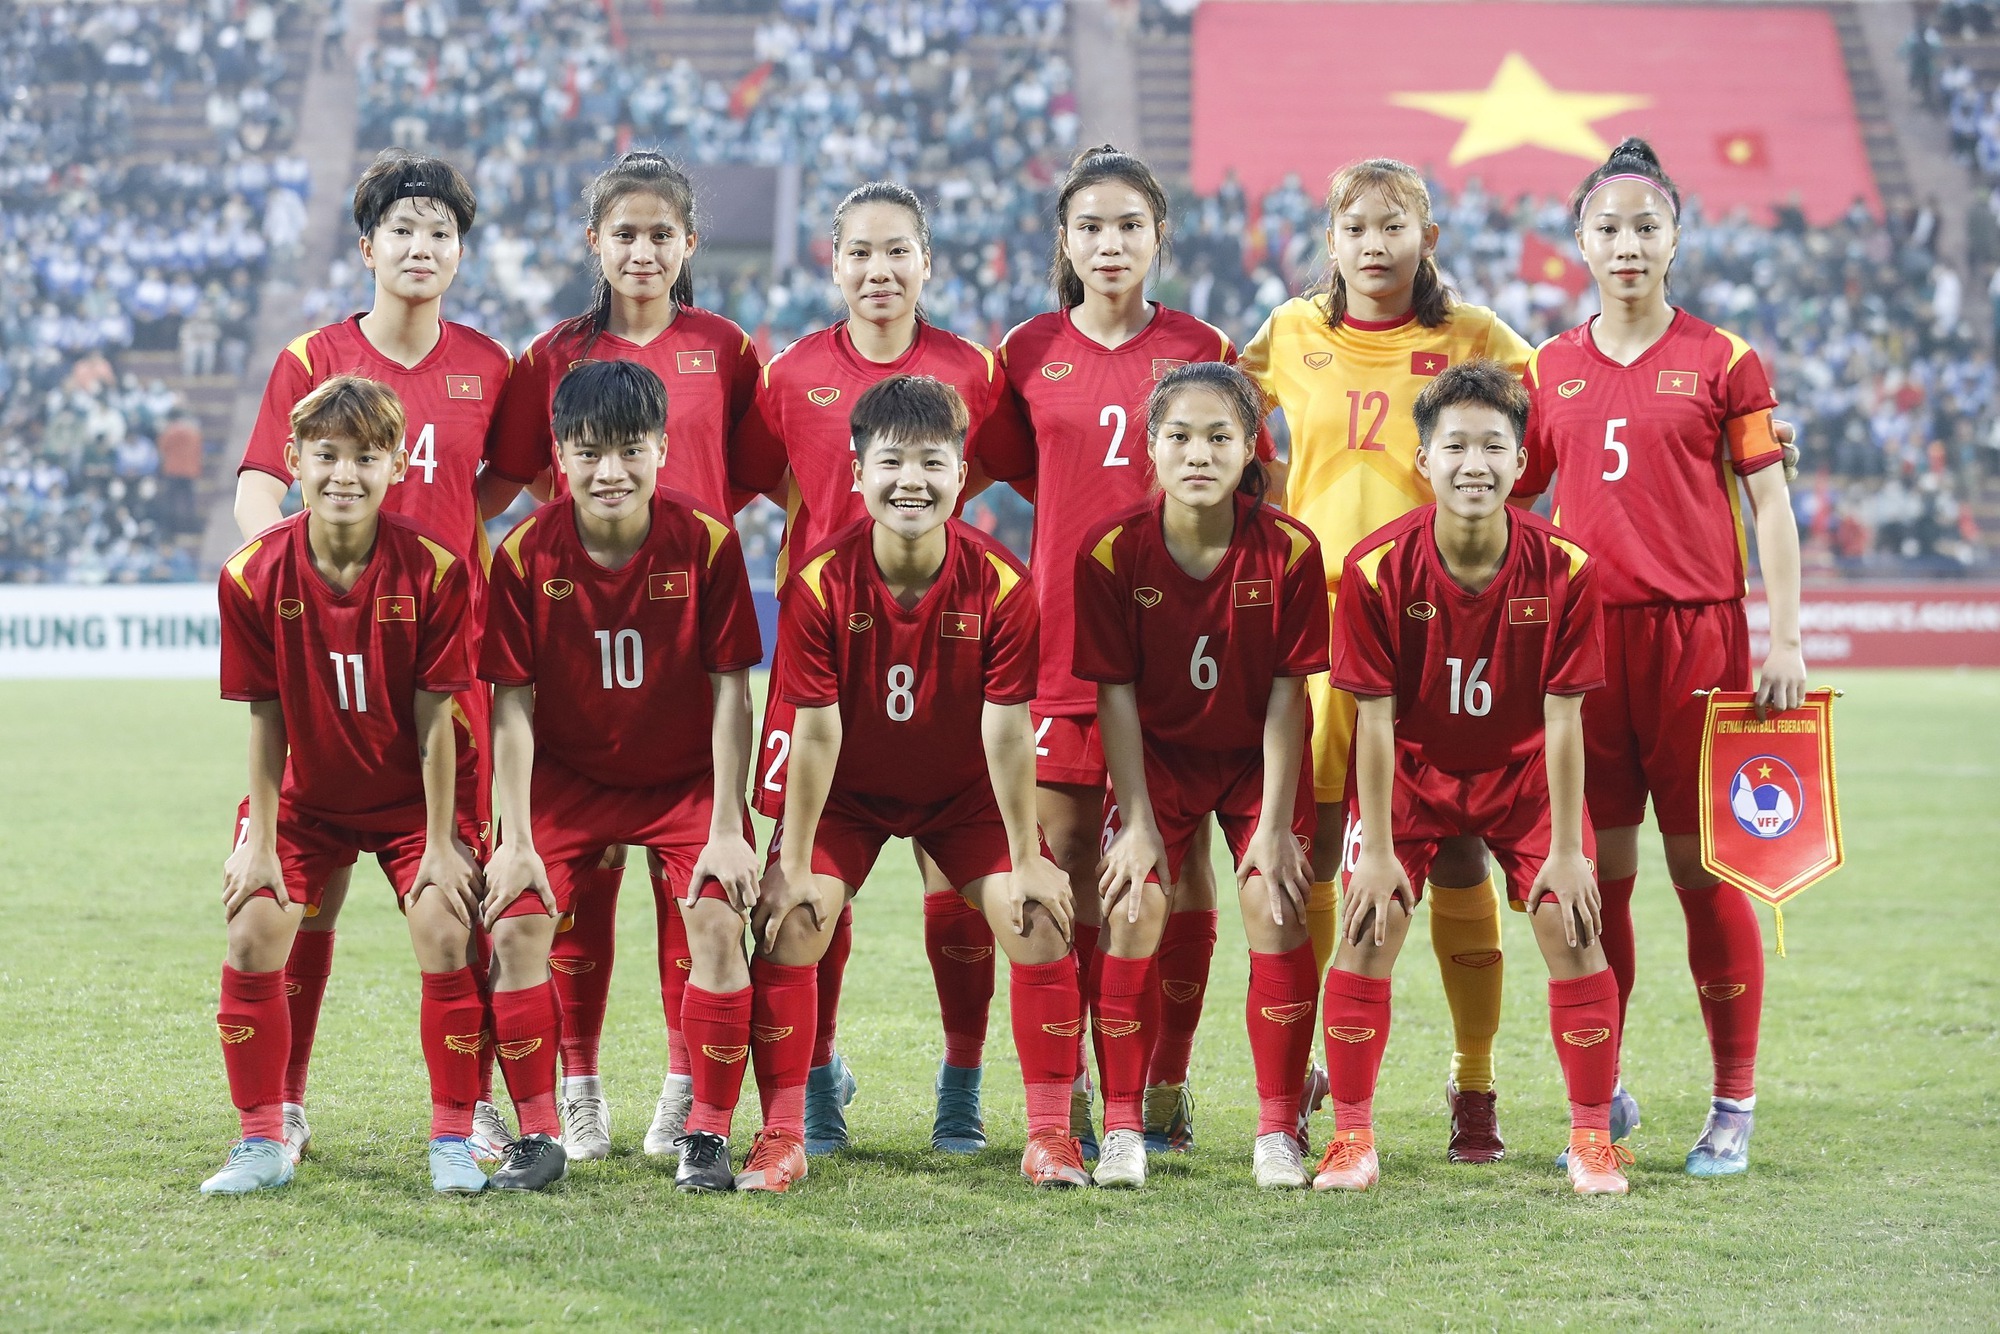 Sắc vóc xinh đẹp, quyến rũ của nữ đội trưởng U.20 Việt Nam - Ảnh 10.